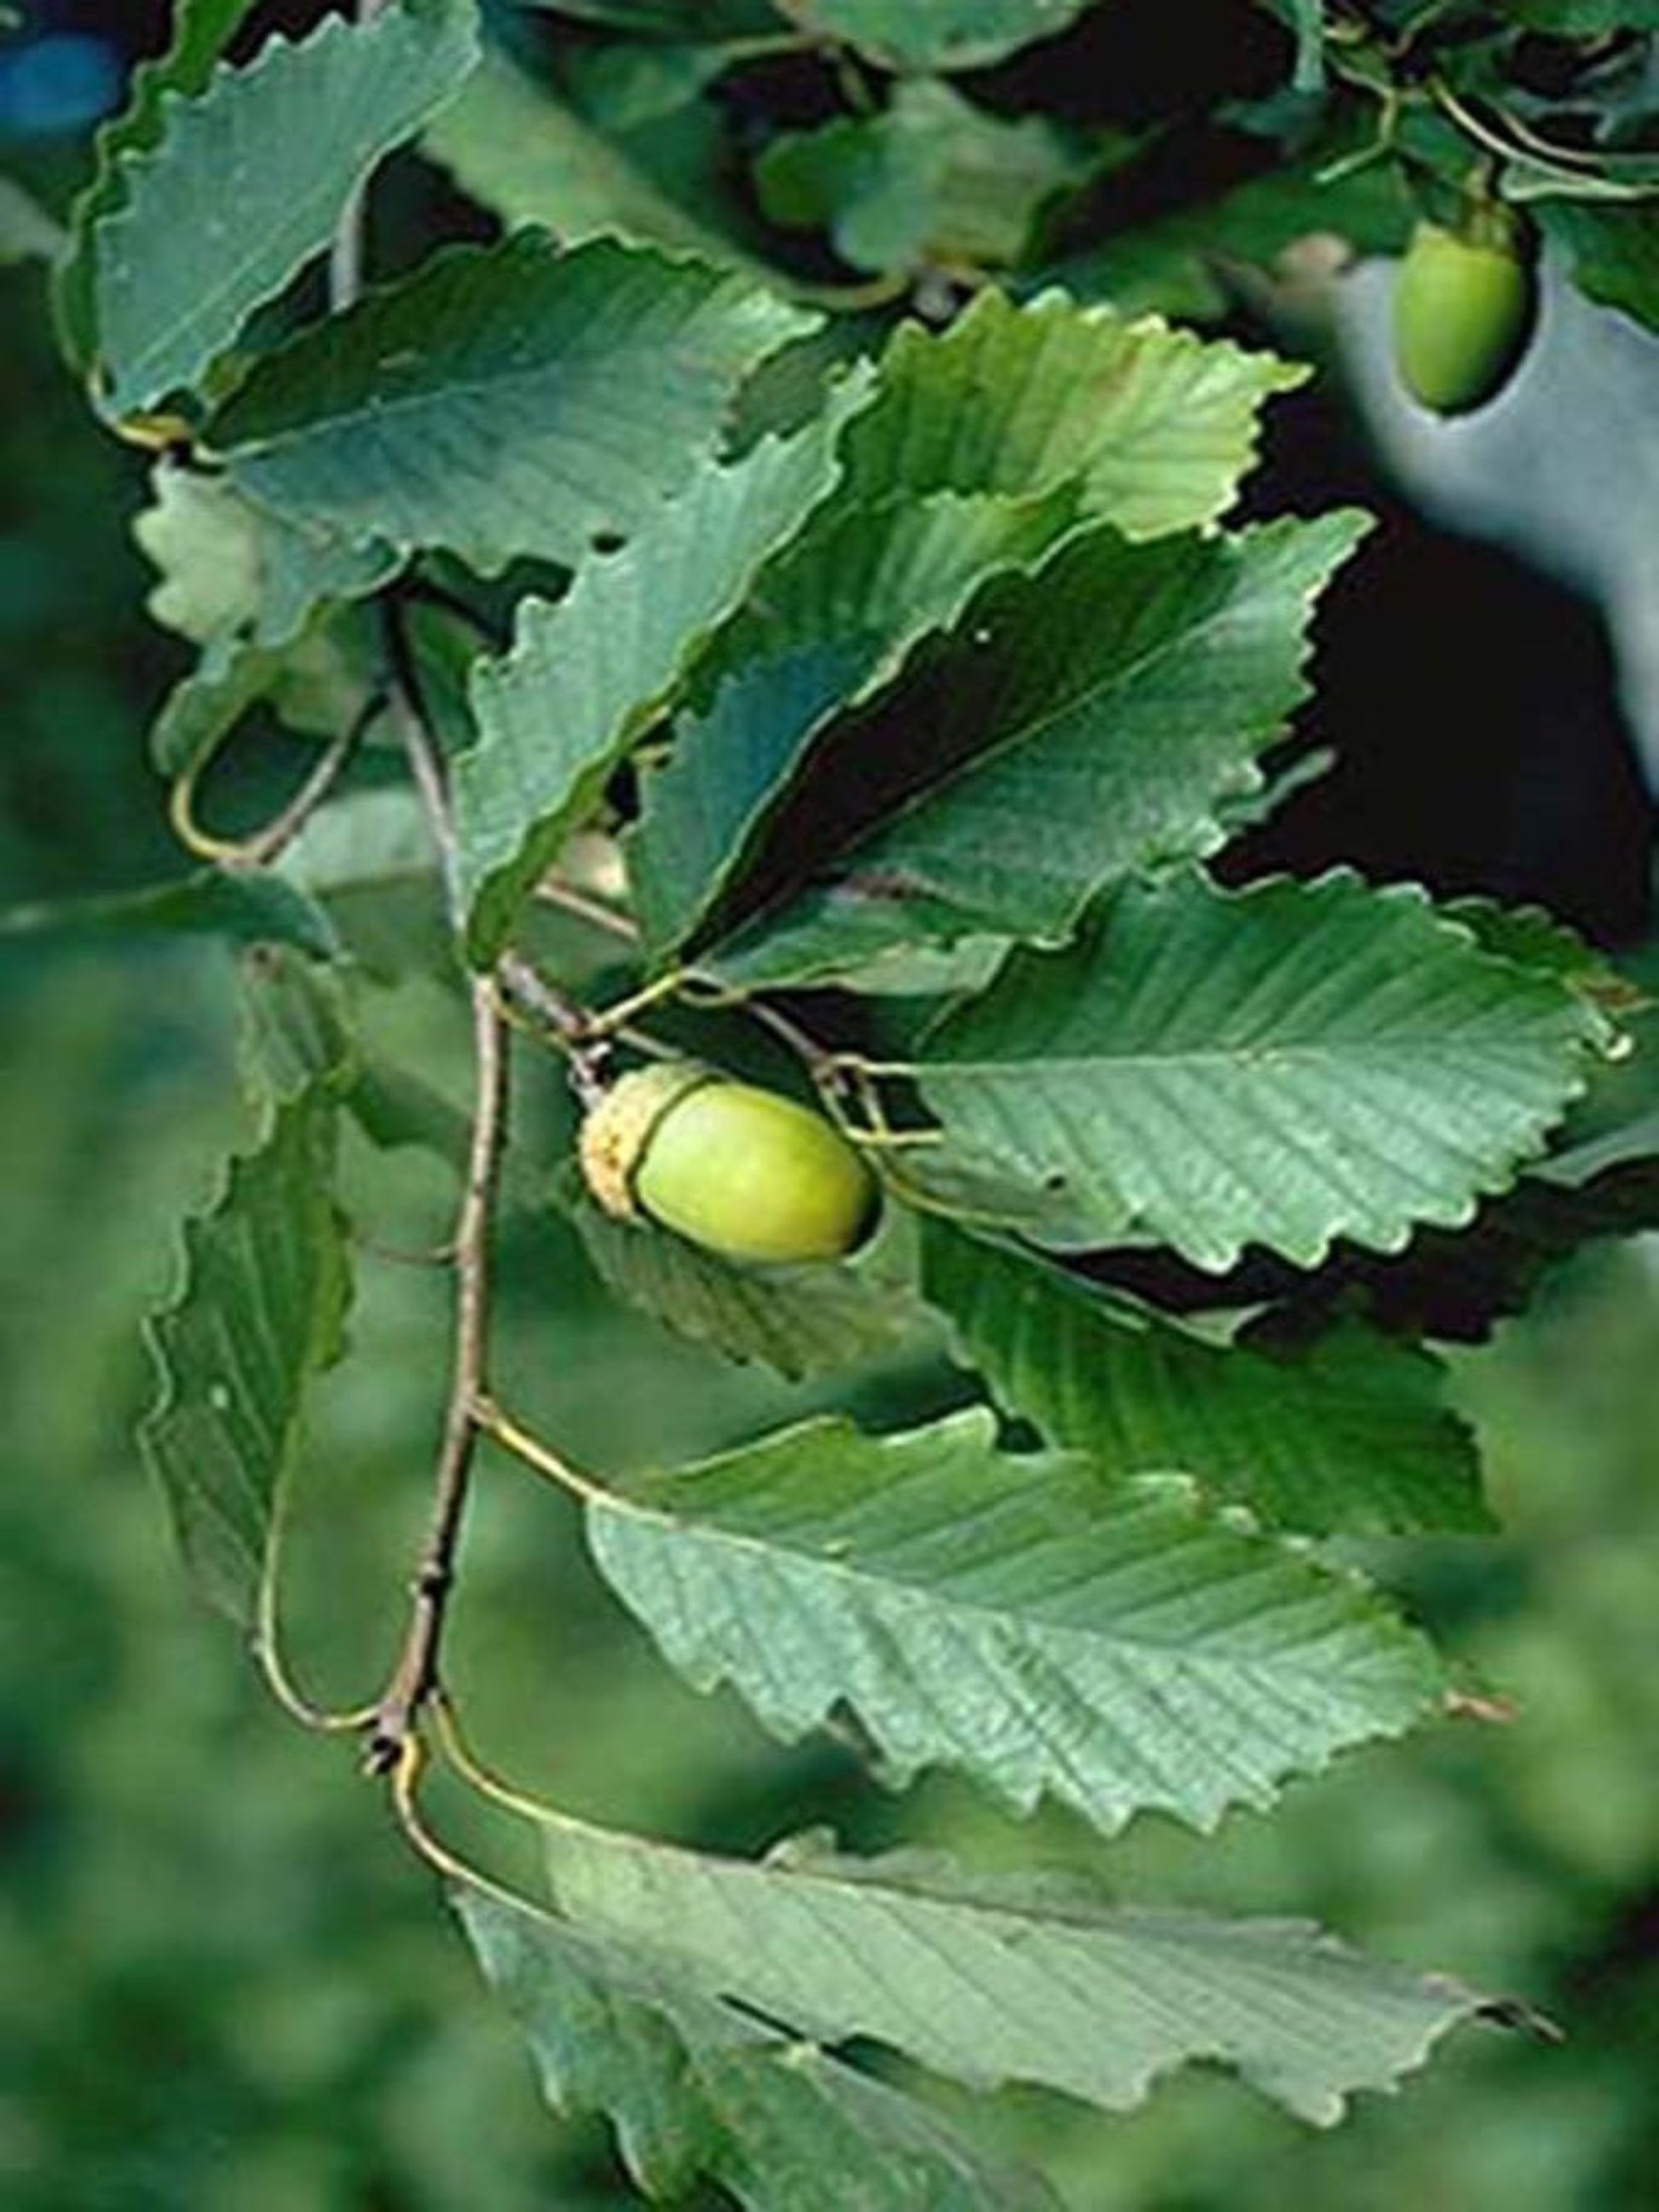 swamp chestnut oak is host tree for skipper butterflies